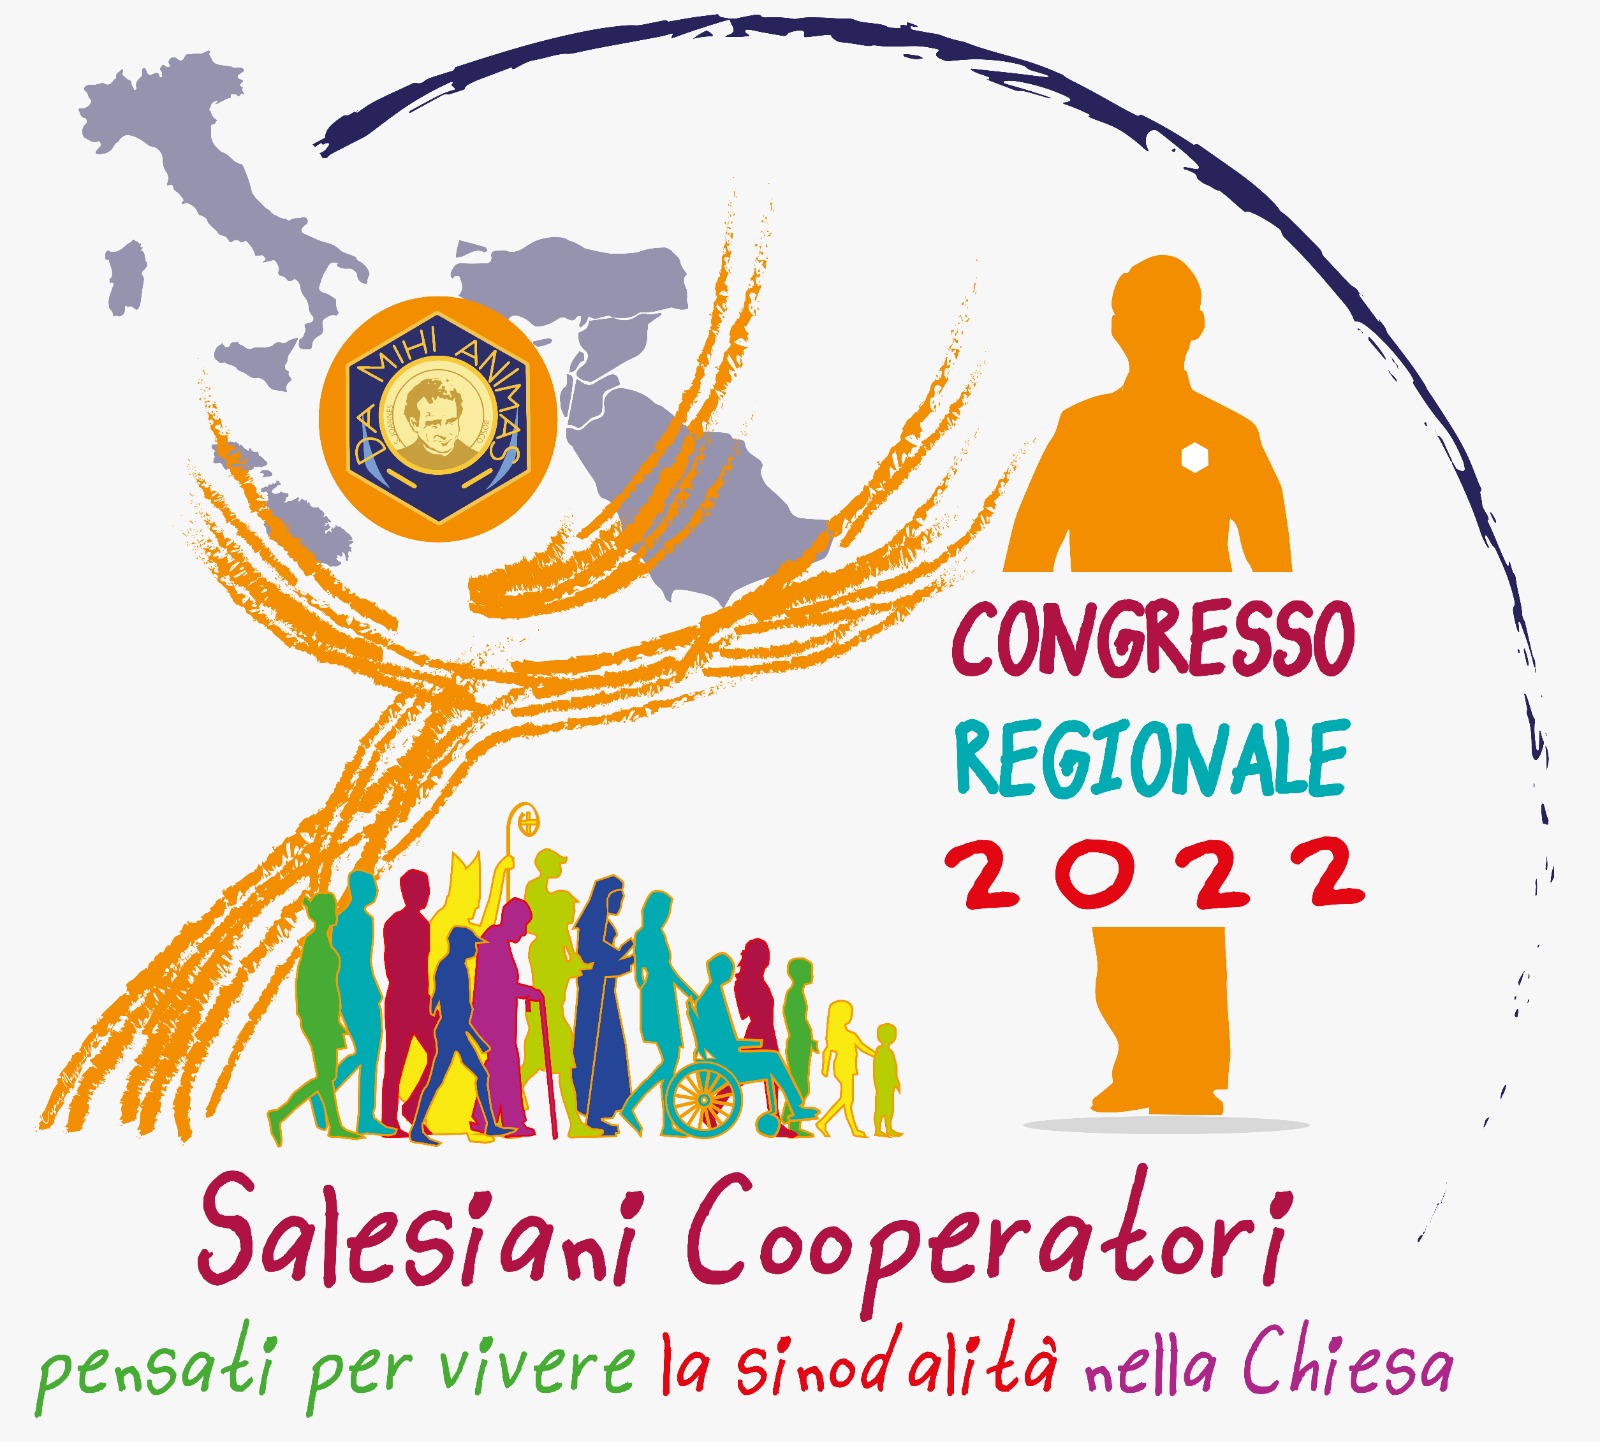 Congresso Regionale Elettivo 8-10 luglio 2022